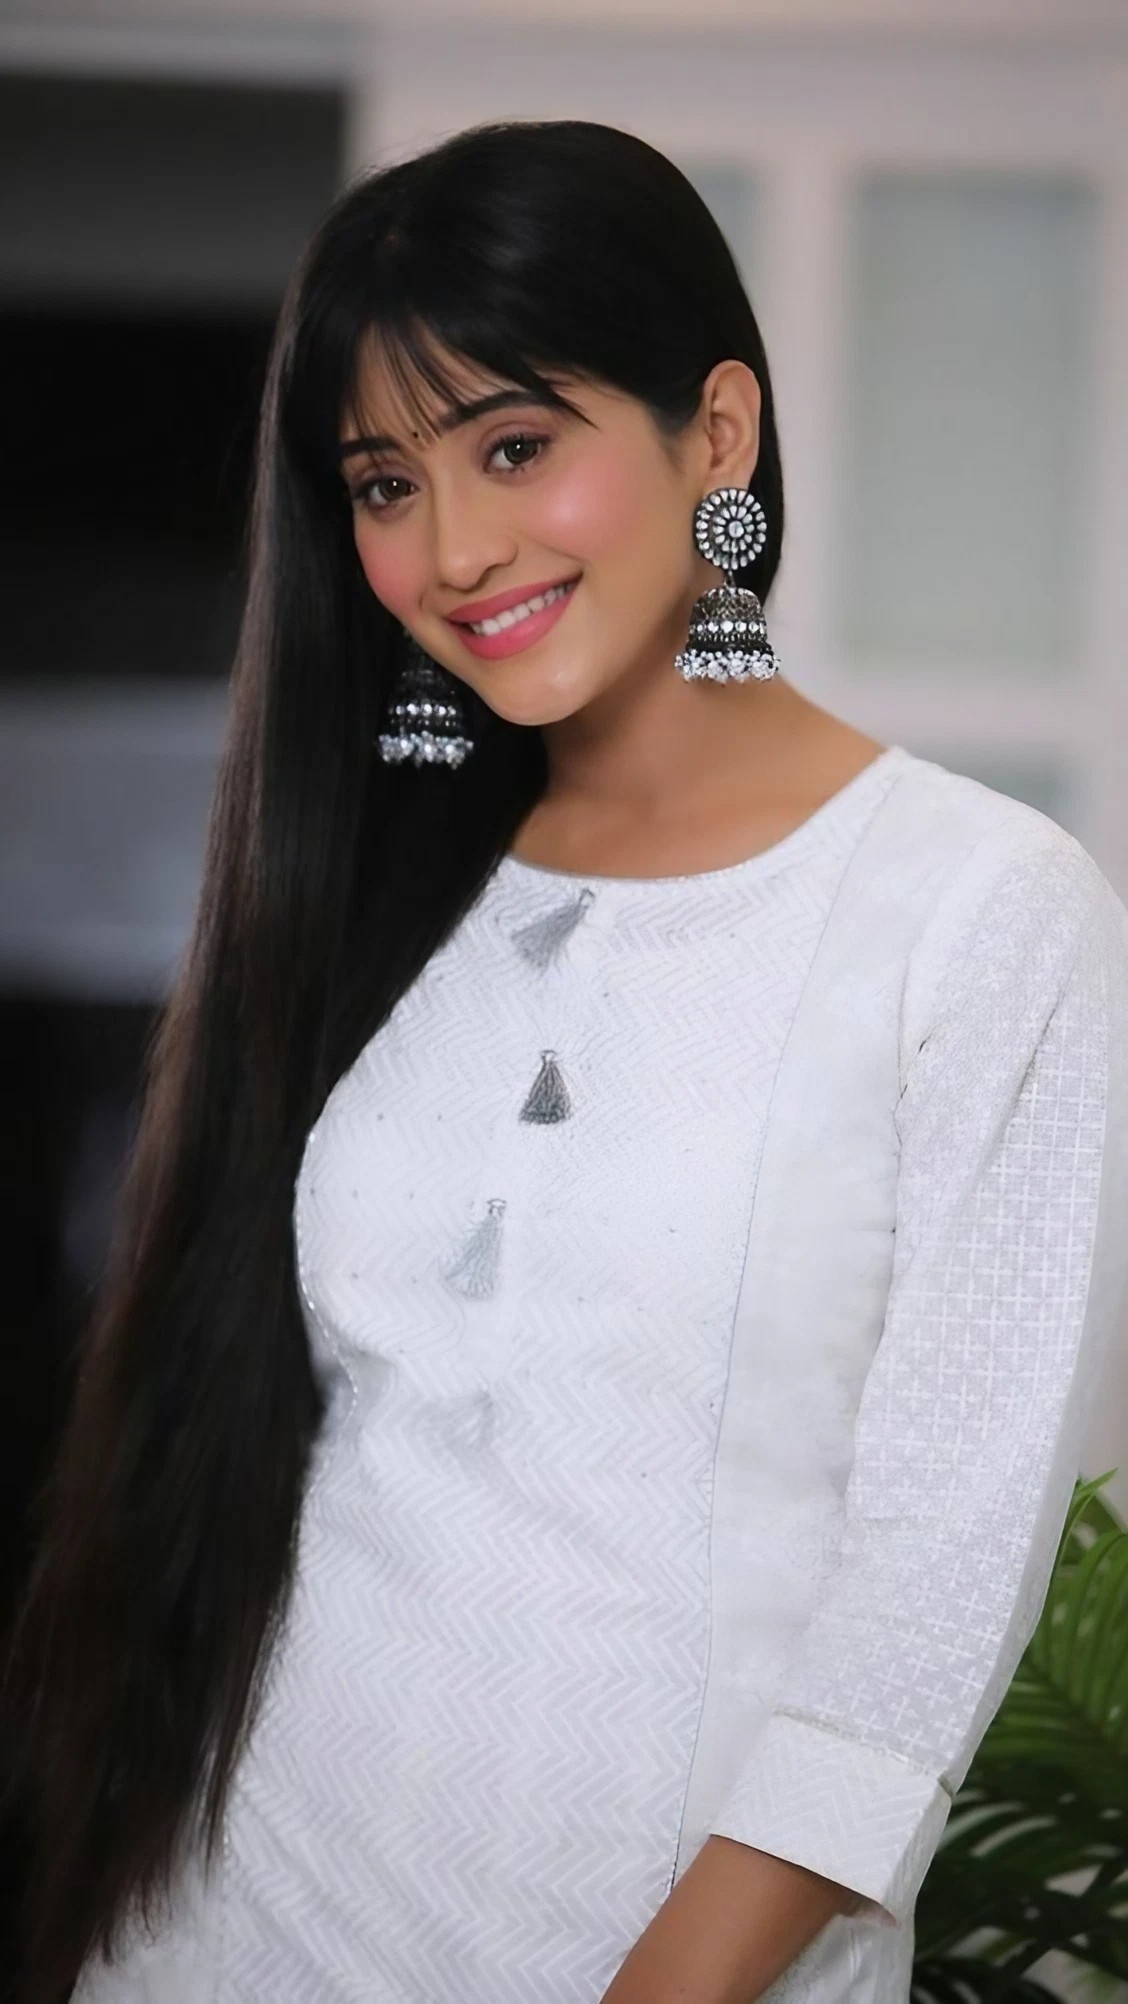 Shivangi Joshi Ka - Shivangi Joshi in white kurta